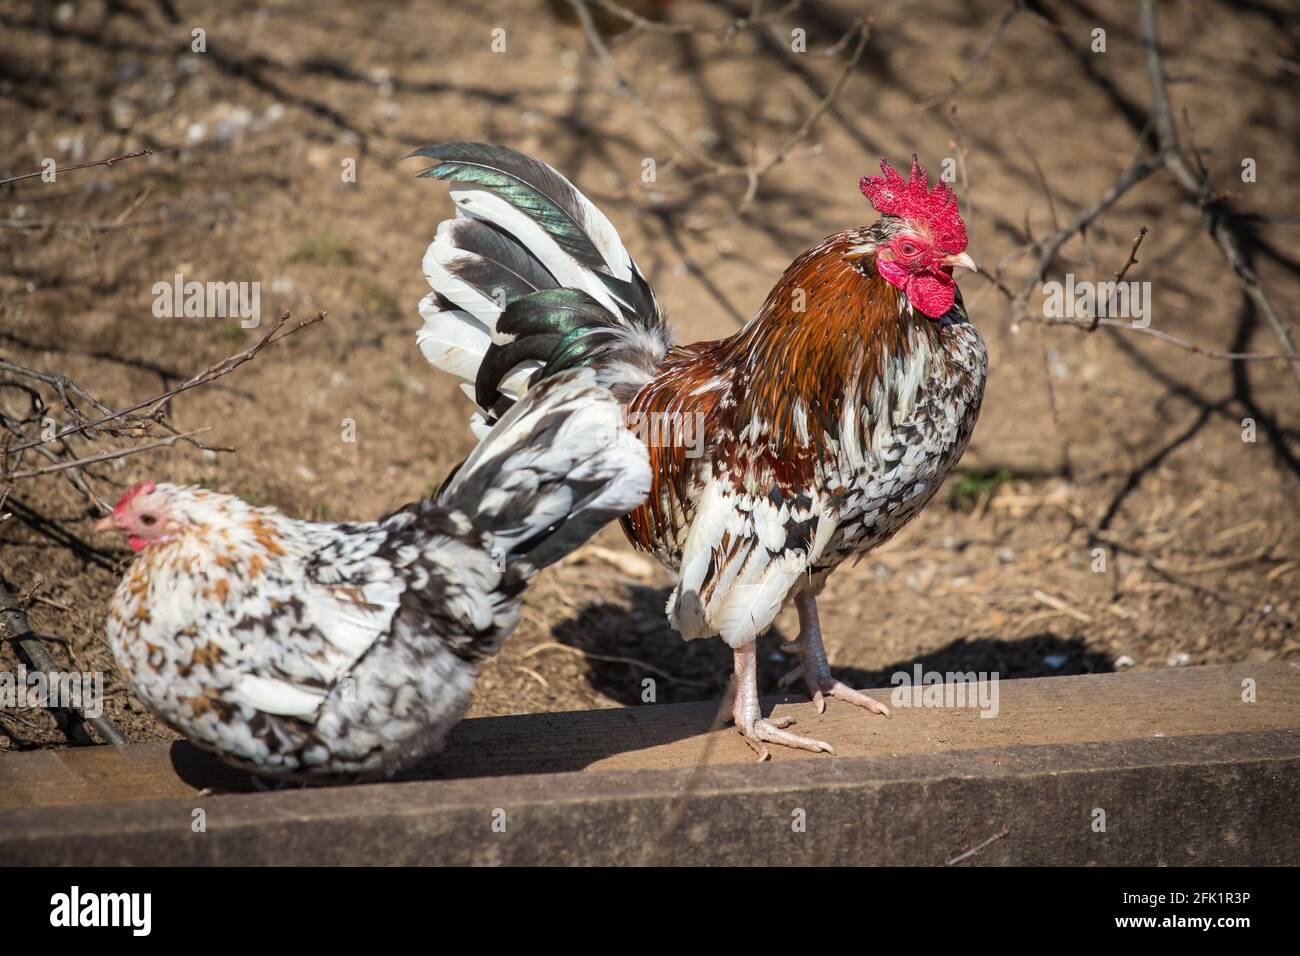 Stoapiperl/ Steinhendl rooster et poule, une race de poulet en danger critique originaire d'Autriche Banque D'Images